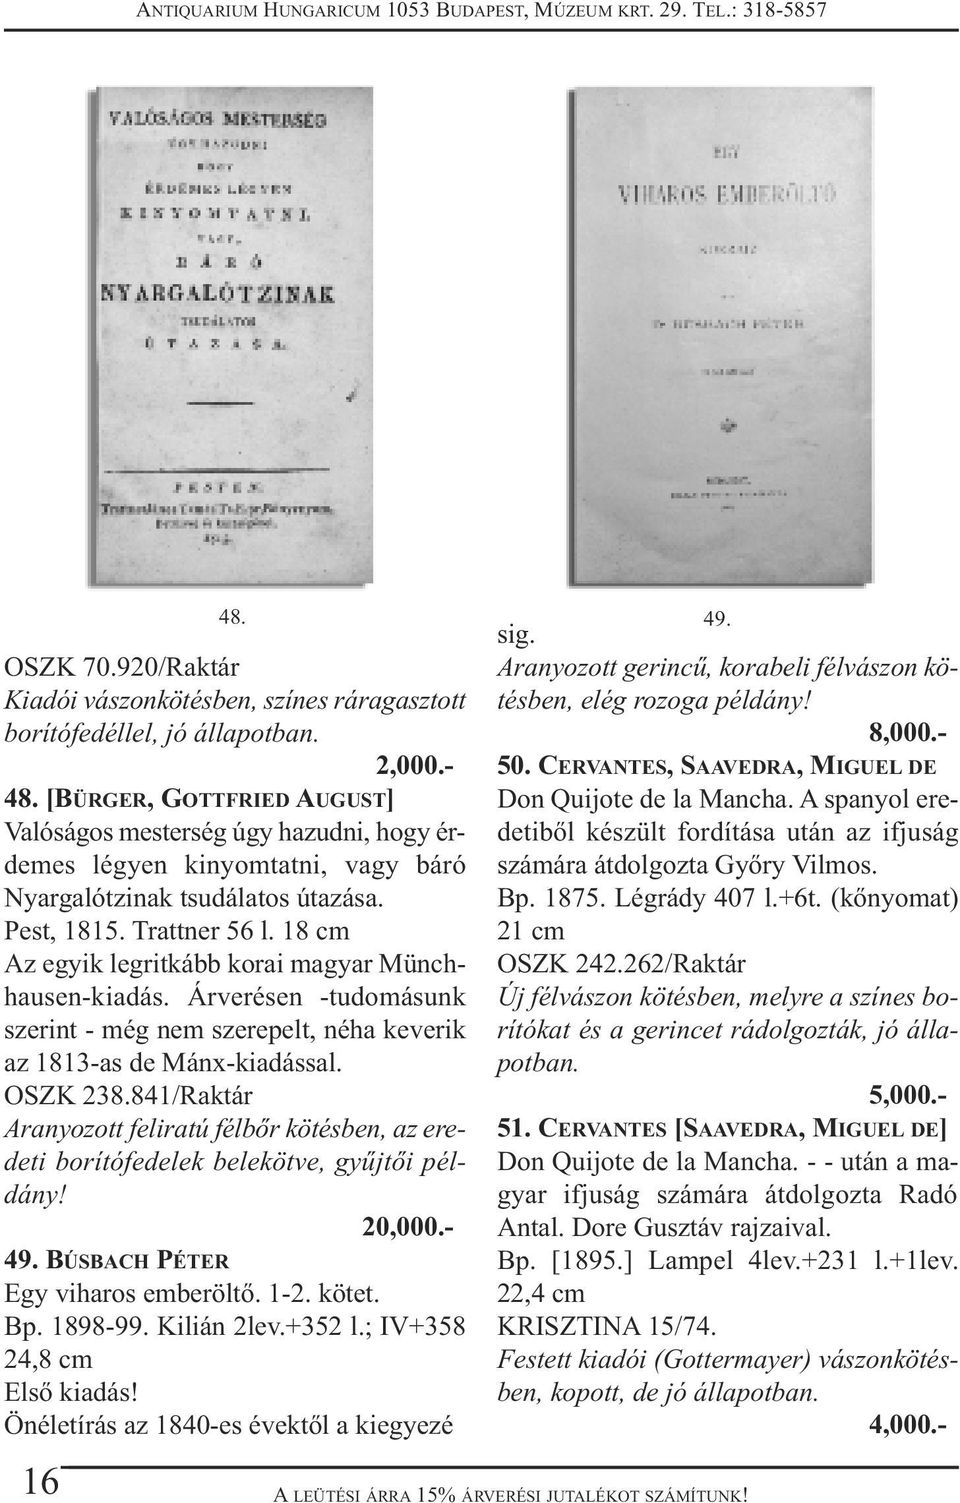 18 cm Az egyik legritkább korai magyar Münchhausen-kiadás. Árverésen -tudomásunk szerint - még nem szerepelt, néha keverik az 1813-as de Mánx-kiadással. OSZK 238.